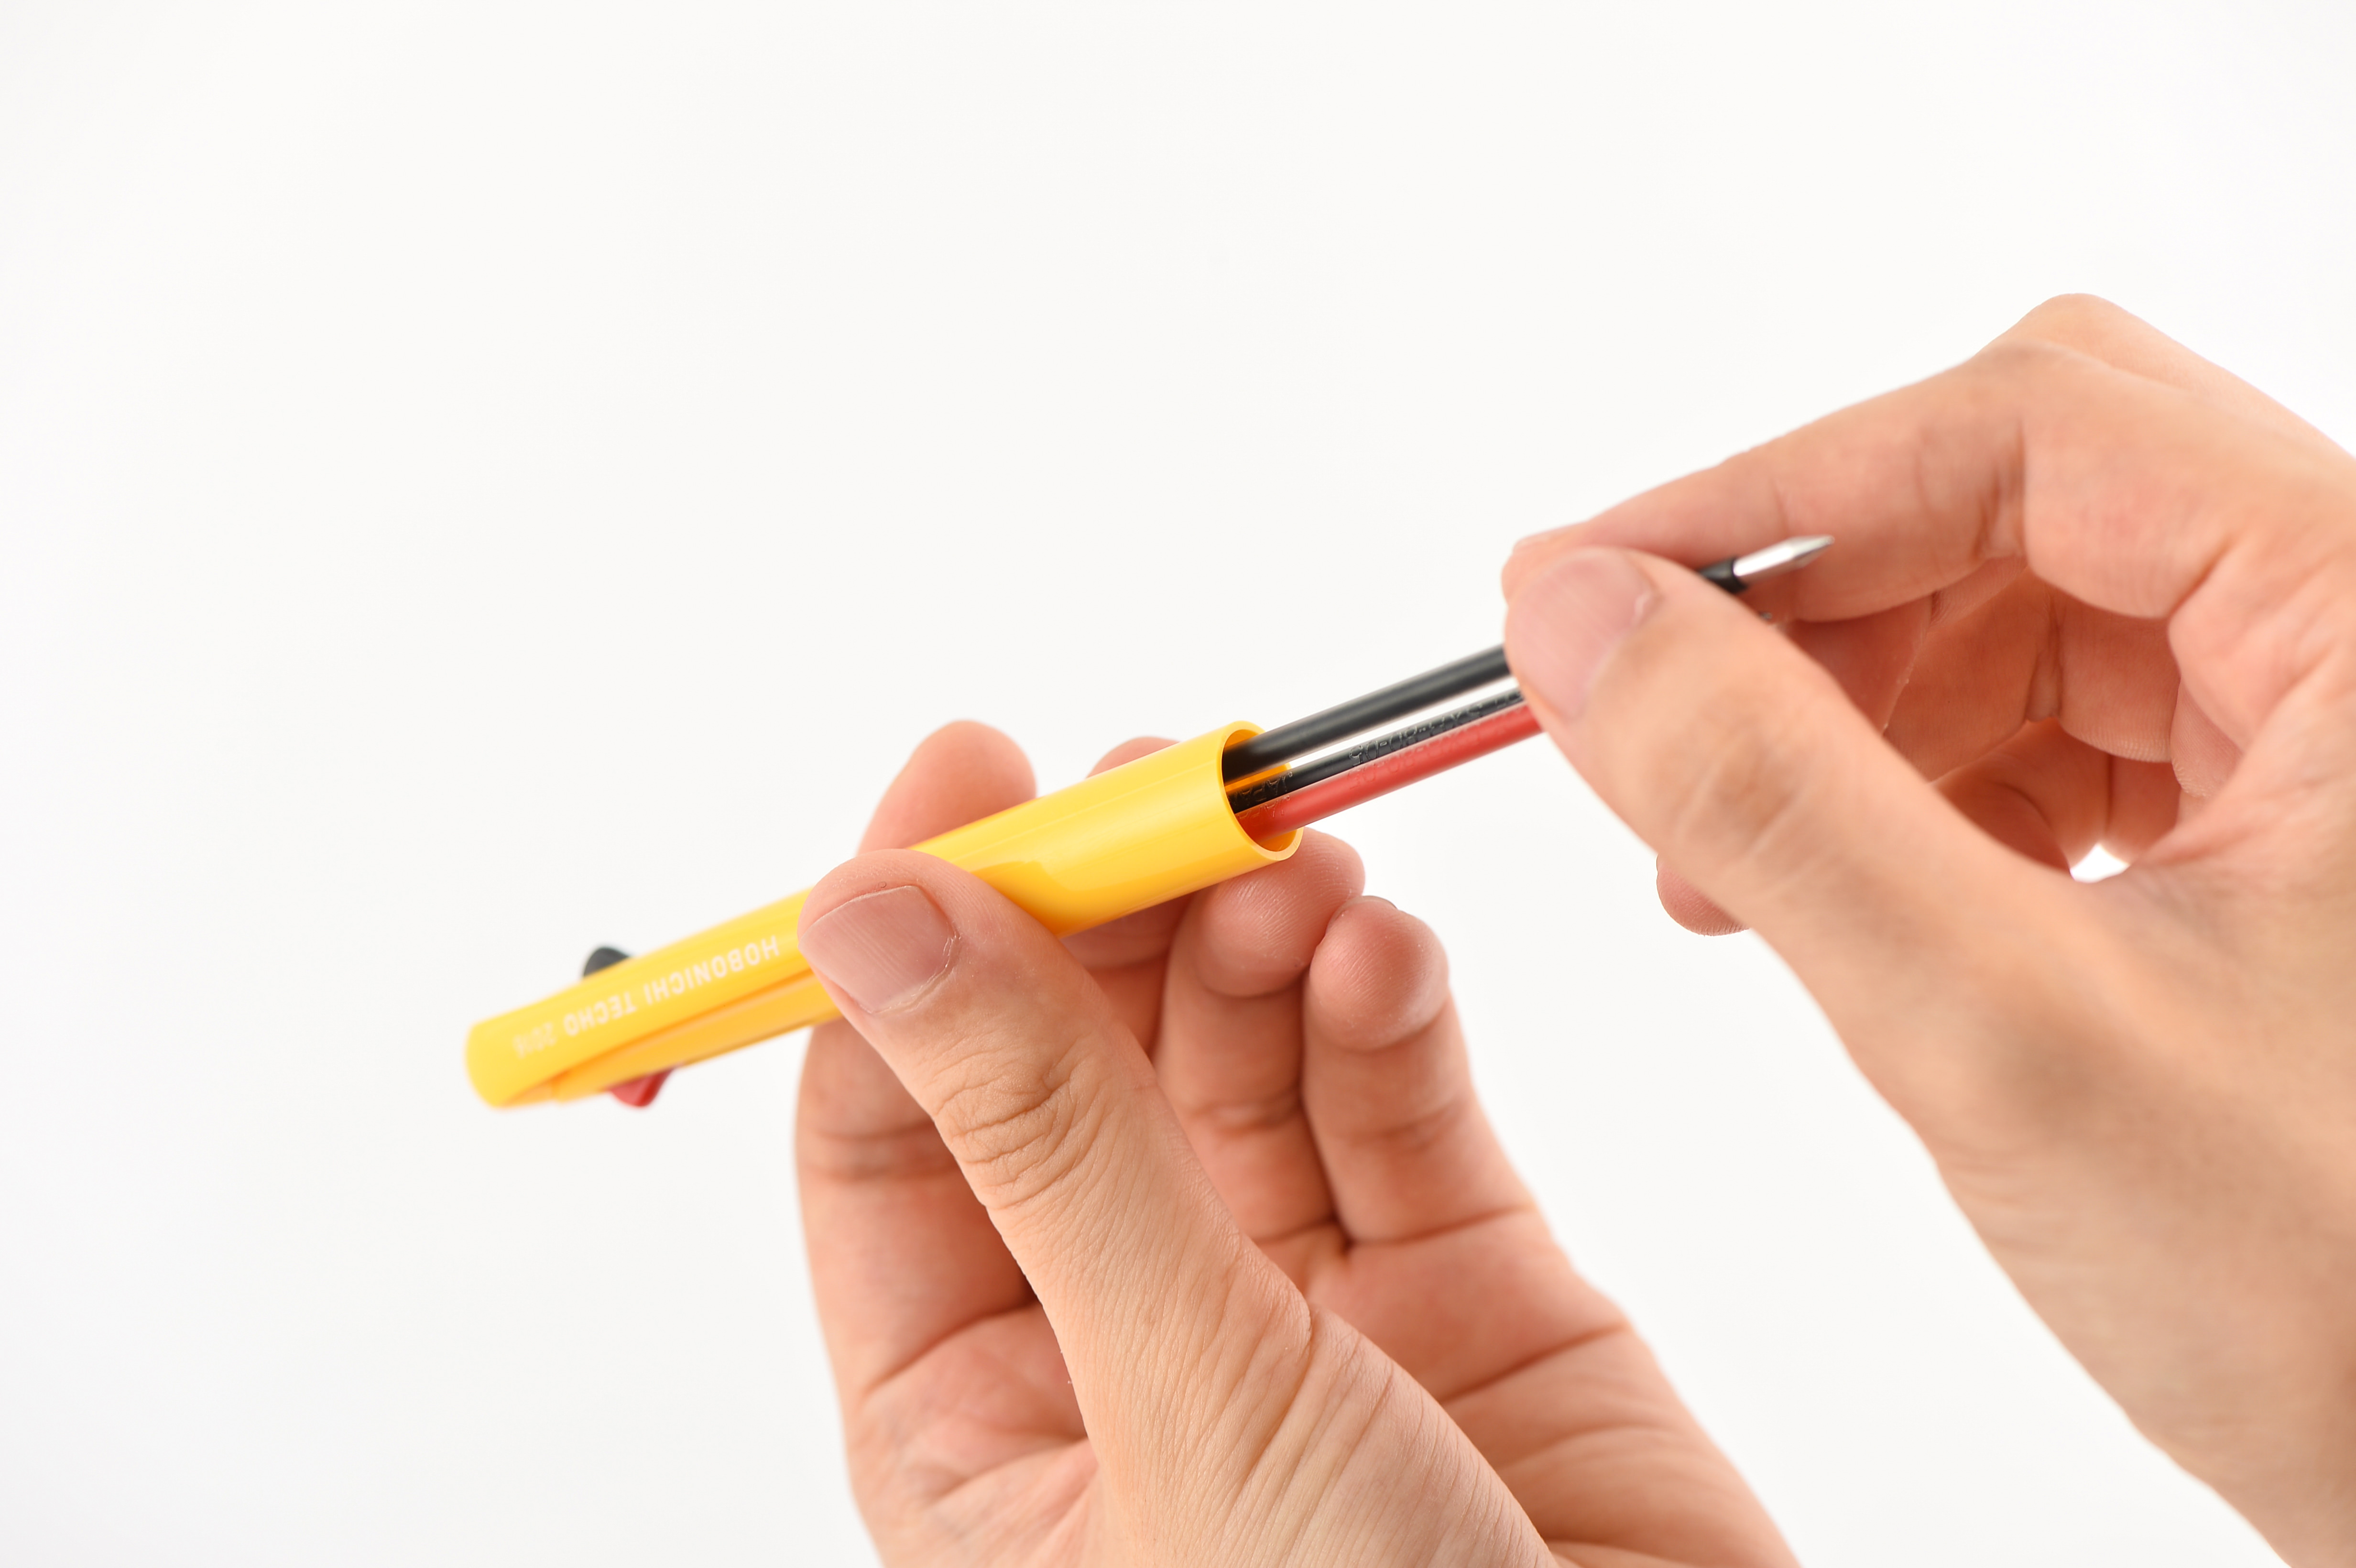 Uni Mitsubishi Pencil: Jetstream Pen Refill - Accessories Lineup -  Hobonichi Techo 2018